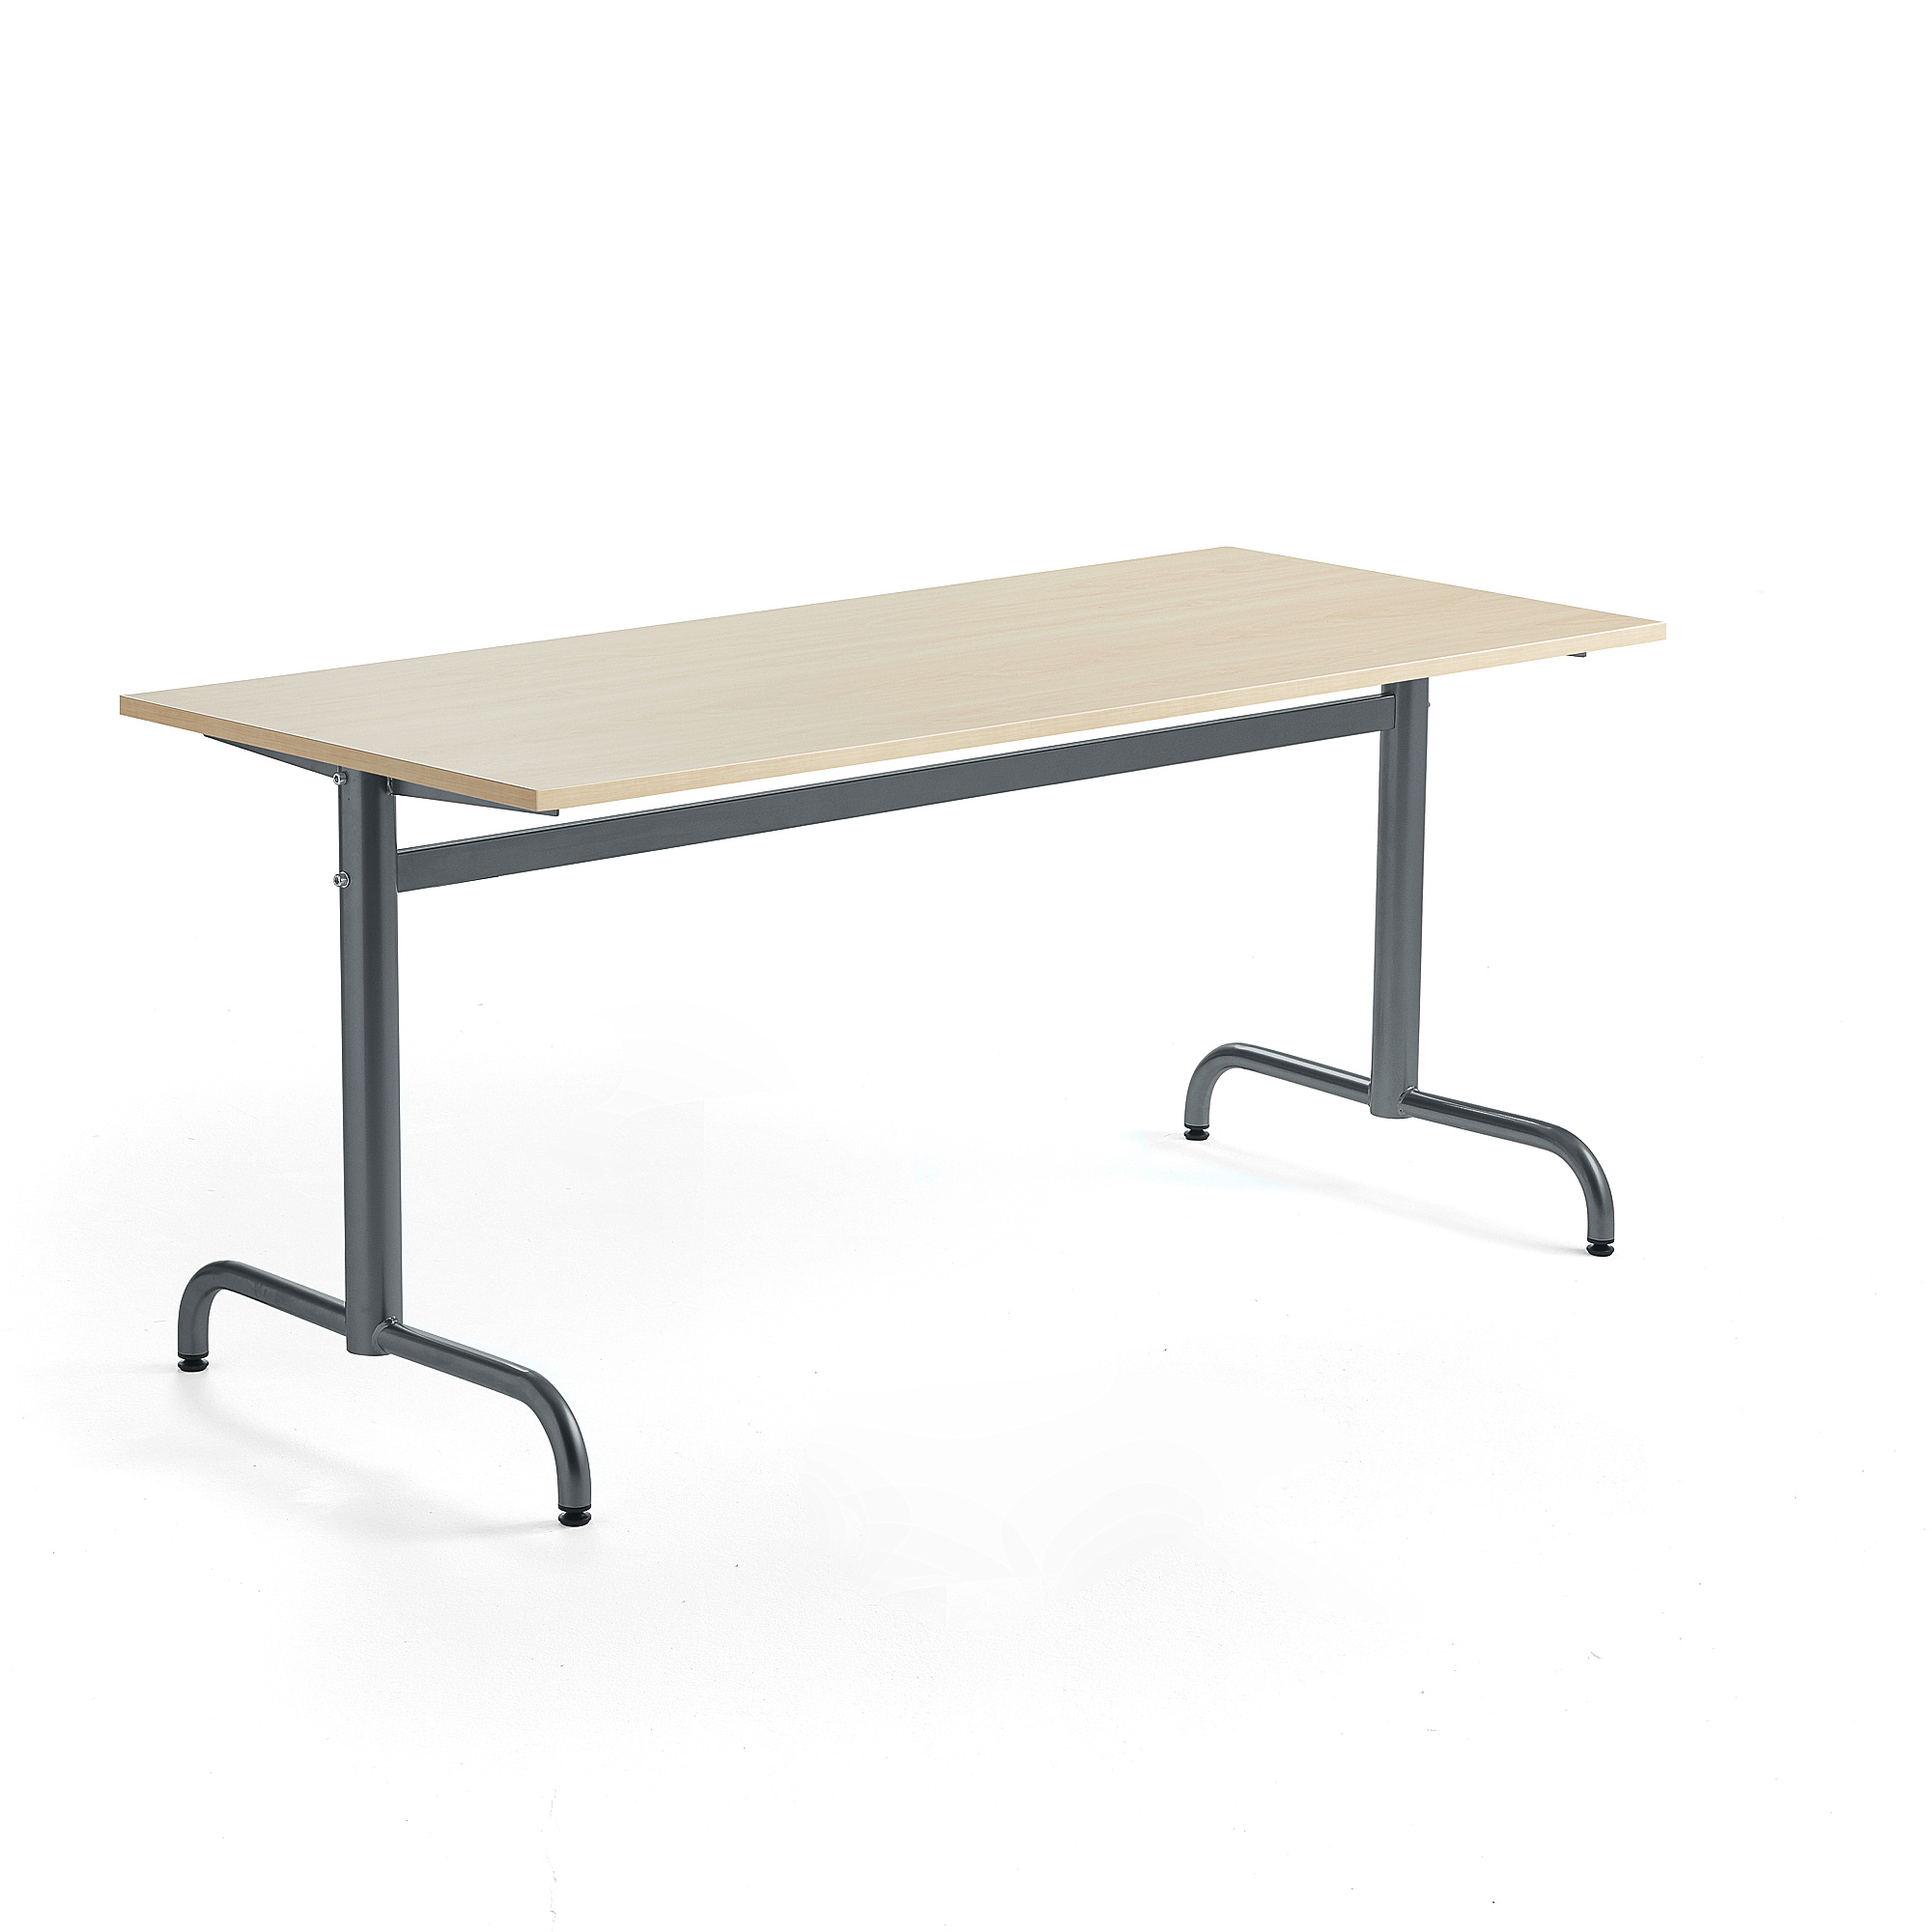 Stůl PLURAL, 1600x700x720 mm, akustická HPL deska, bříza, antracitově šedá